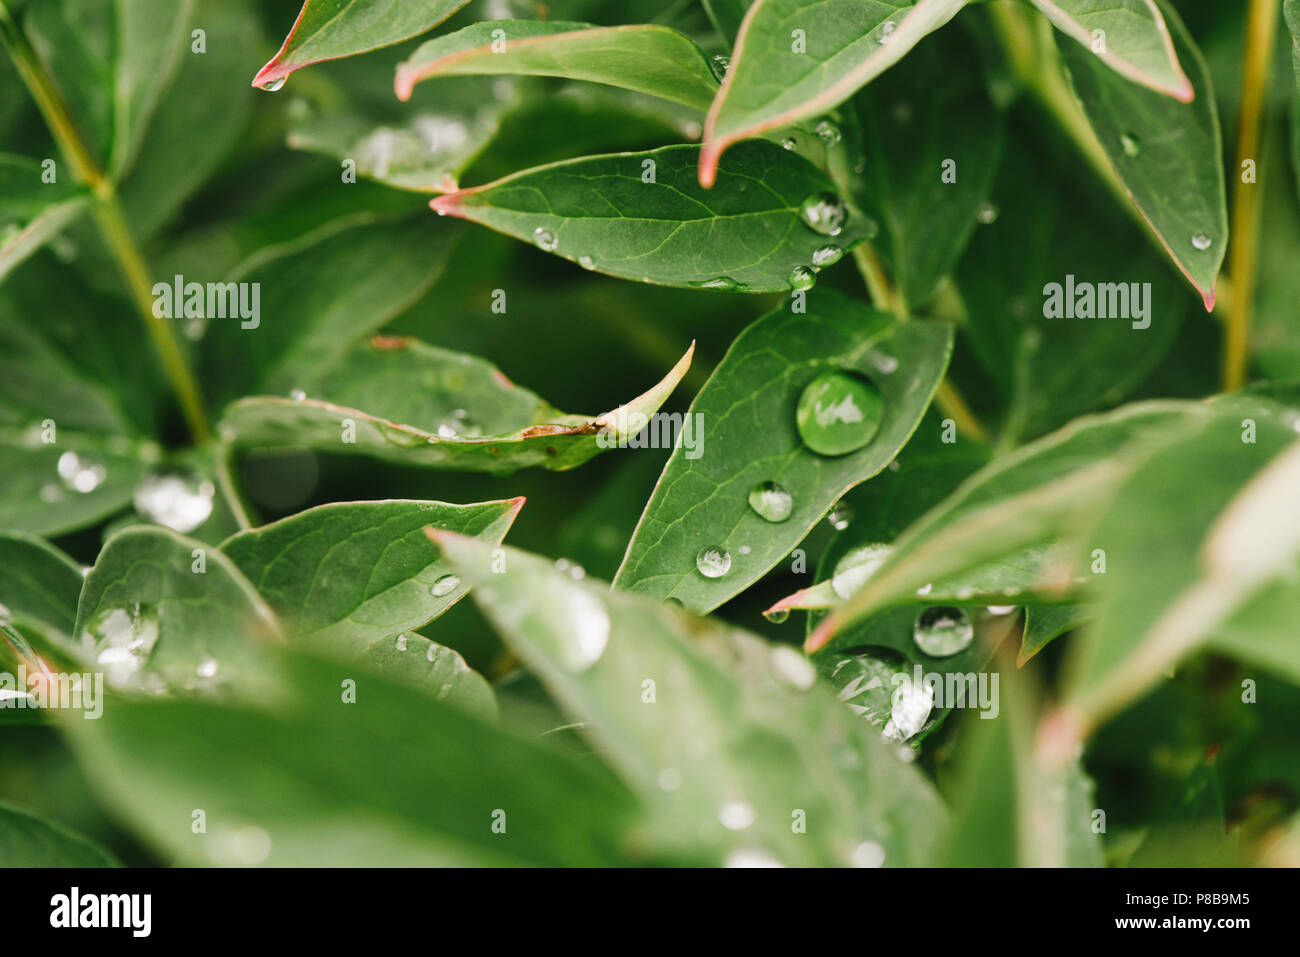 Después de la lluvia, gotas de agua sobre hojas verdes en el jardín, de fondo de la trama de fondo natural para la entrada de texto. Foto de stock